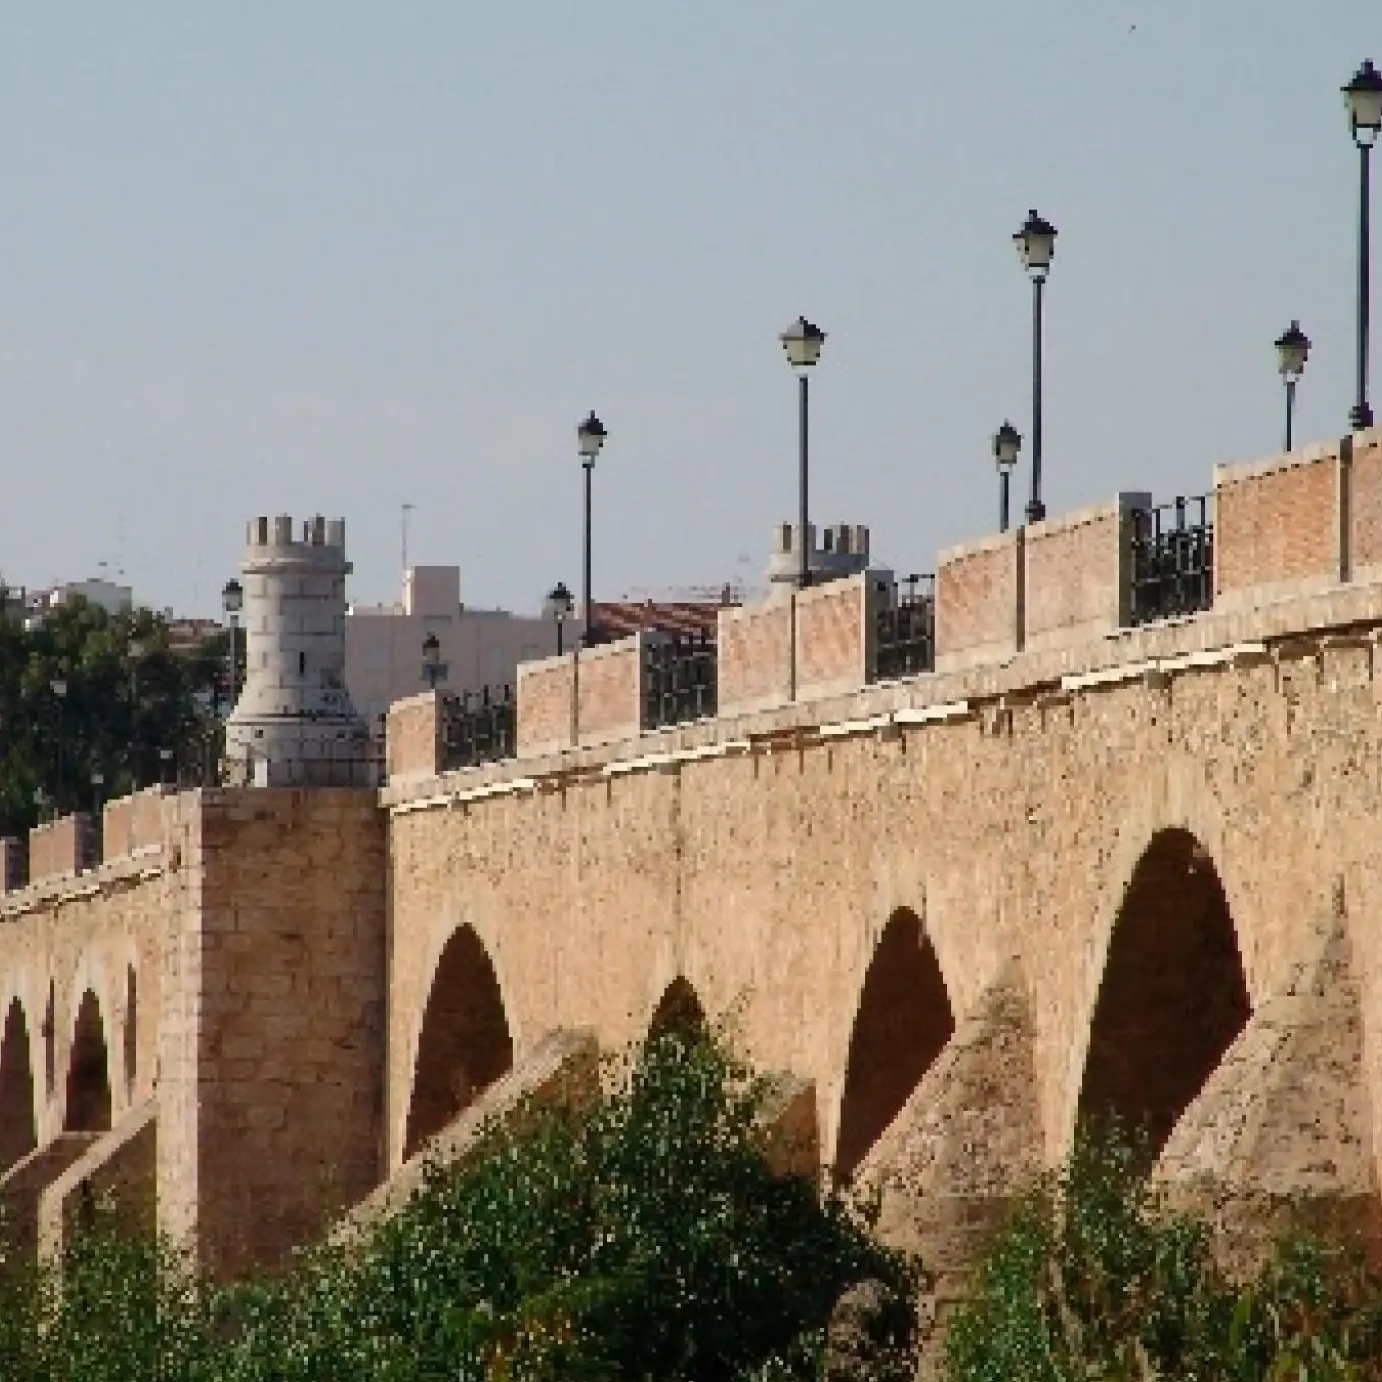 Puente de Palmas